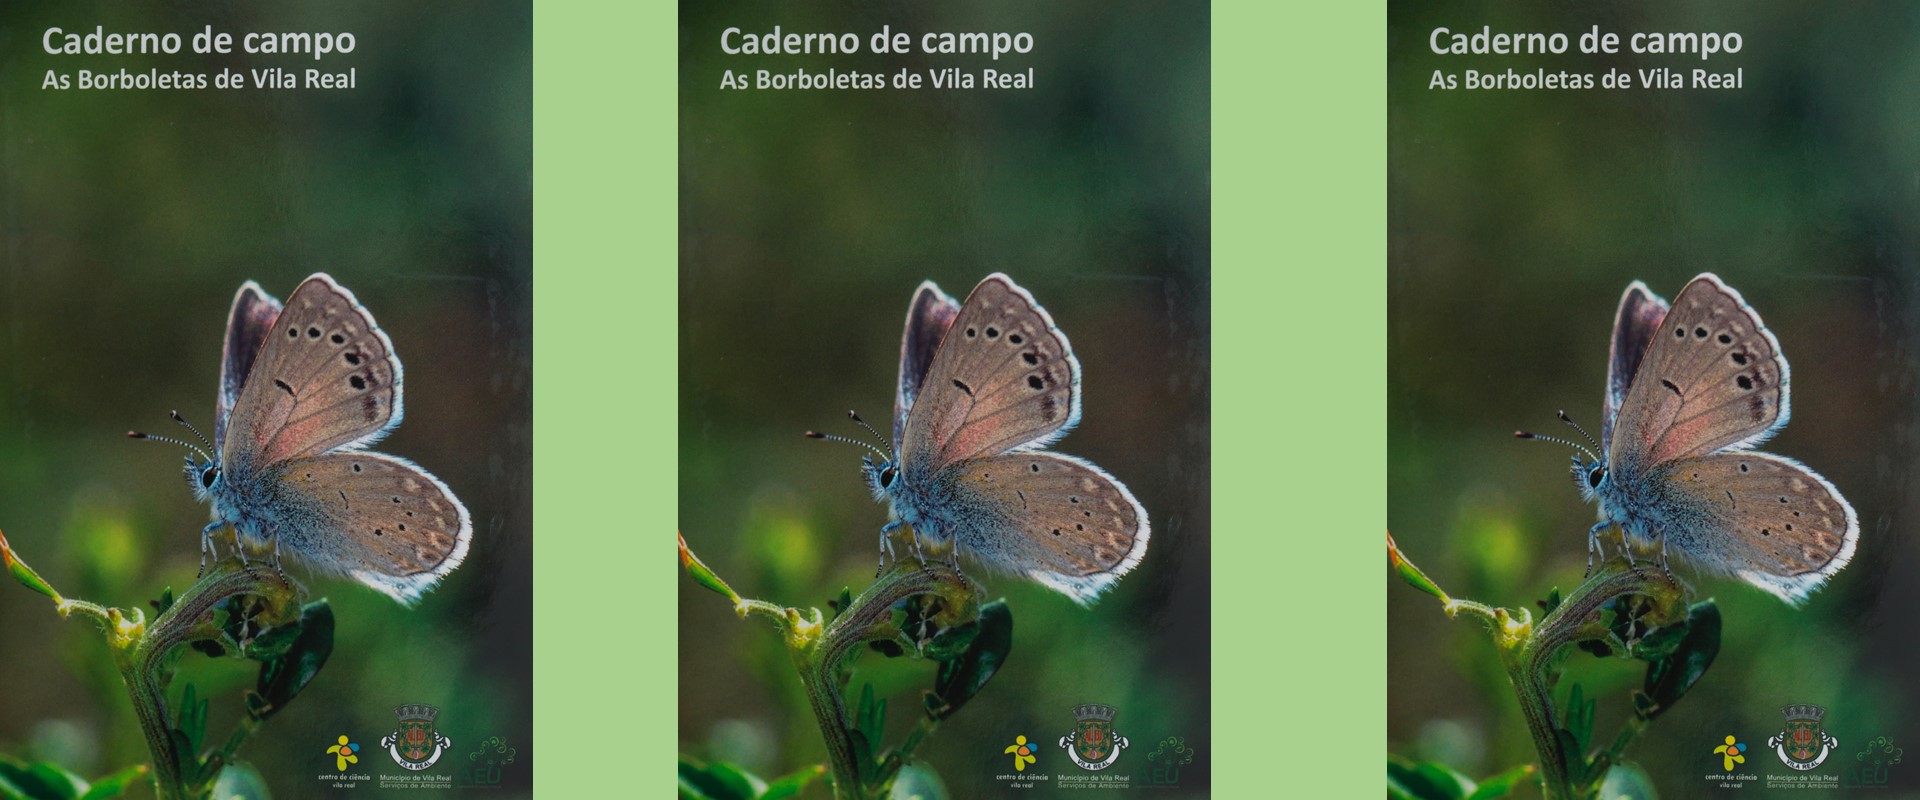 Caderno de Campo “As Borboletas de Vila Real” já disponível